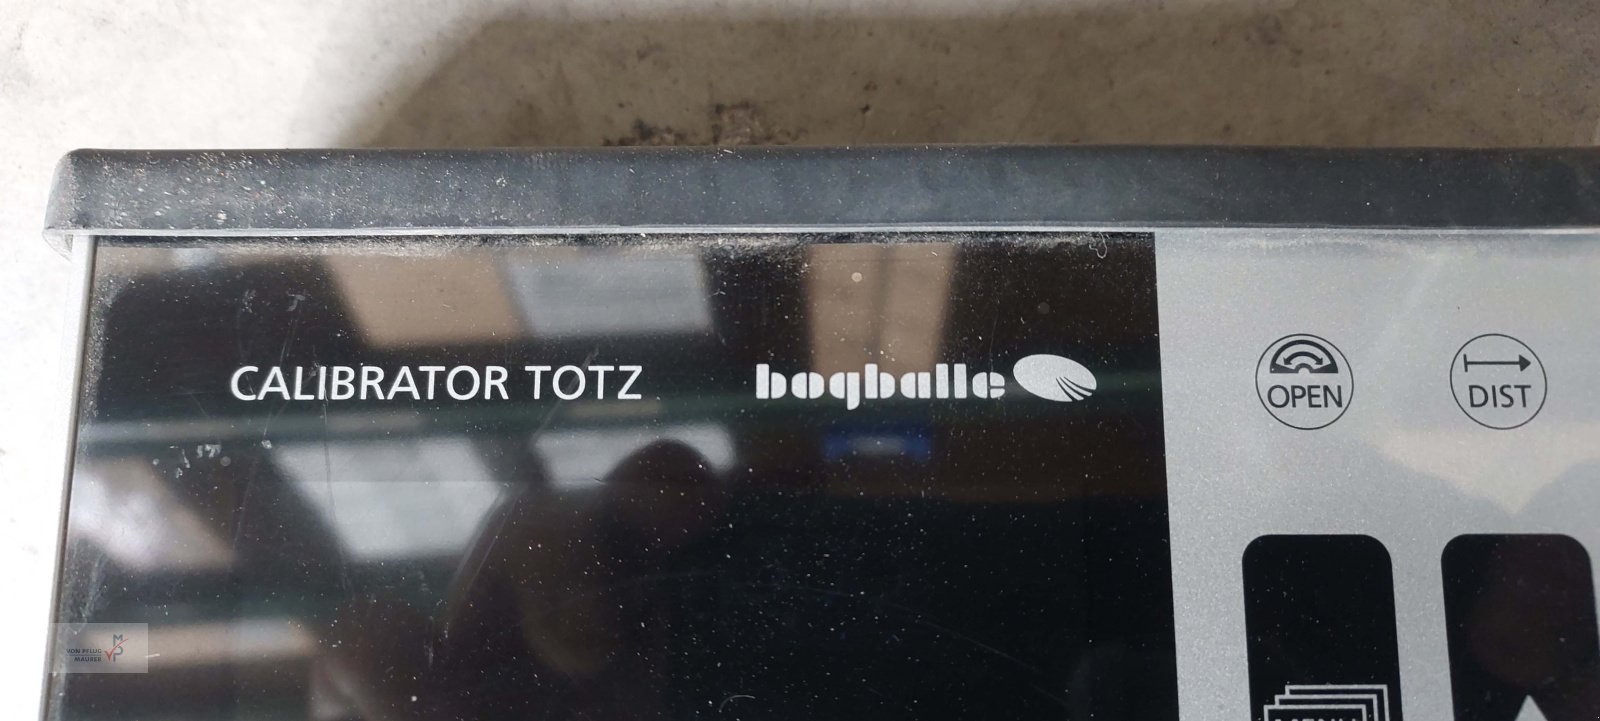 Düngerstreuer des Typs Bogballe Calibrator TOTZ, Gebrauchtmaschine in Mahlberg-Orschweier (Bild 5)